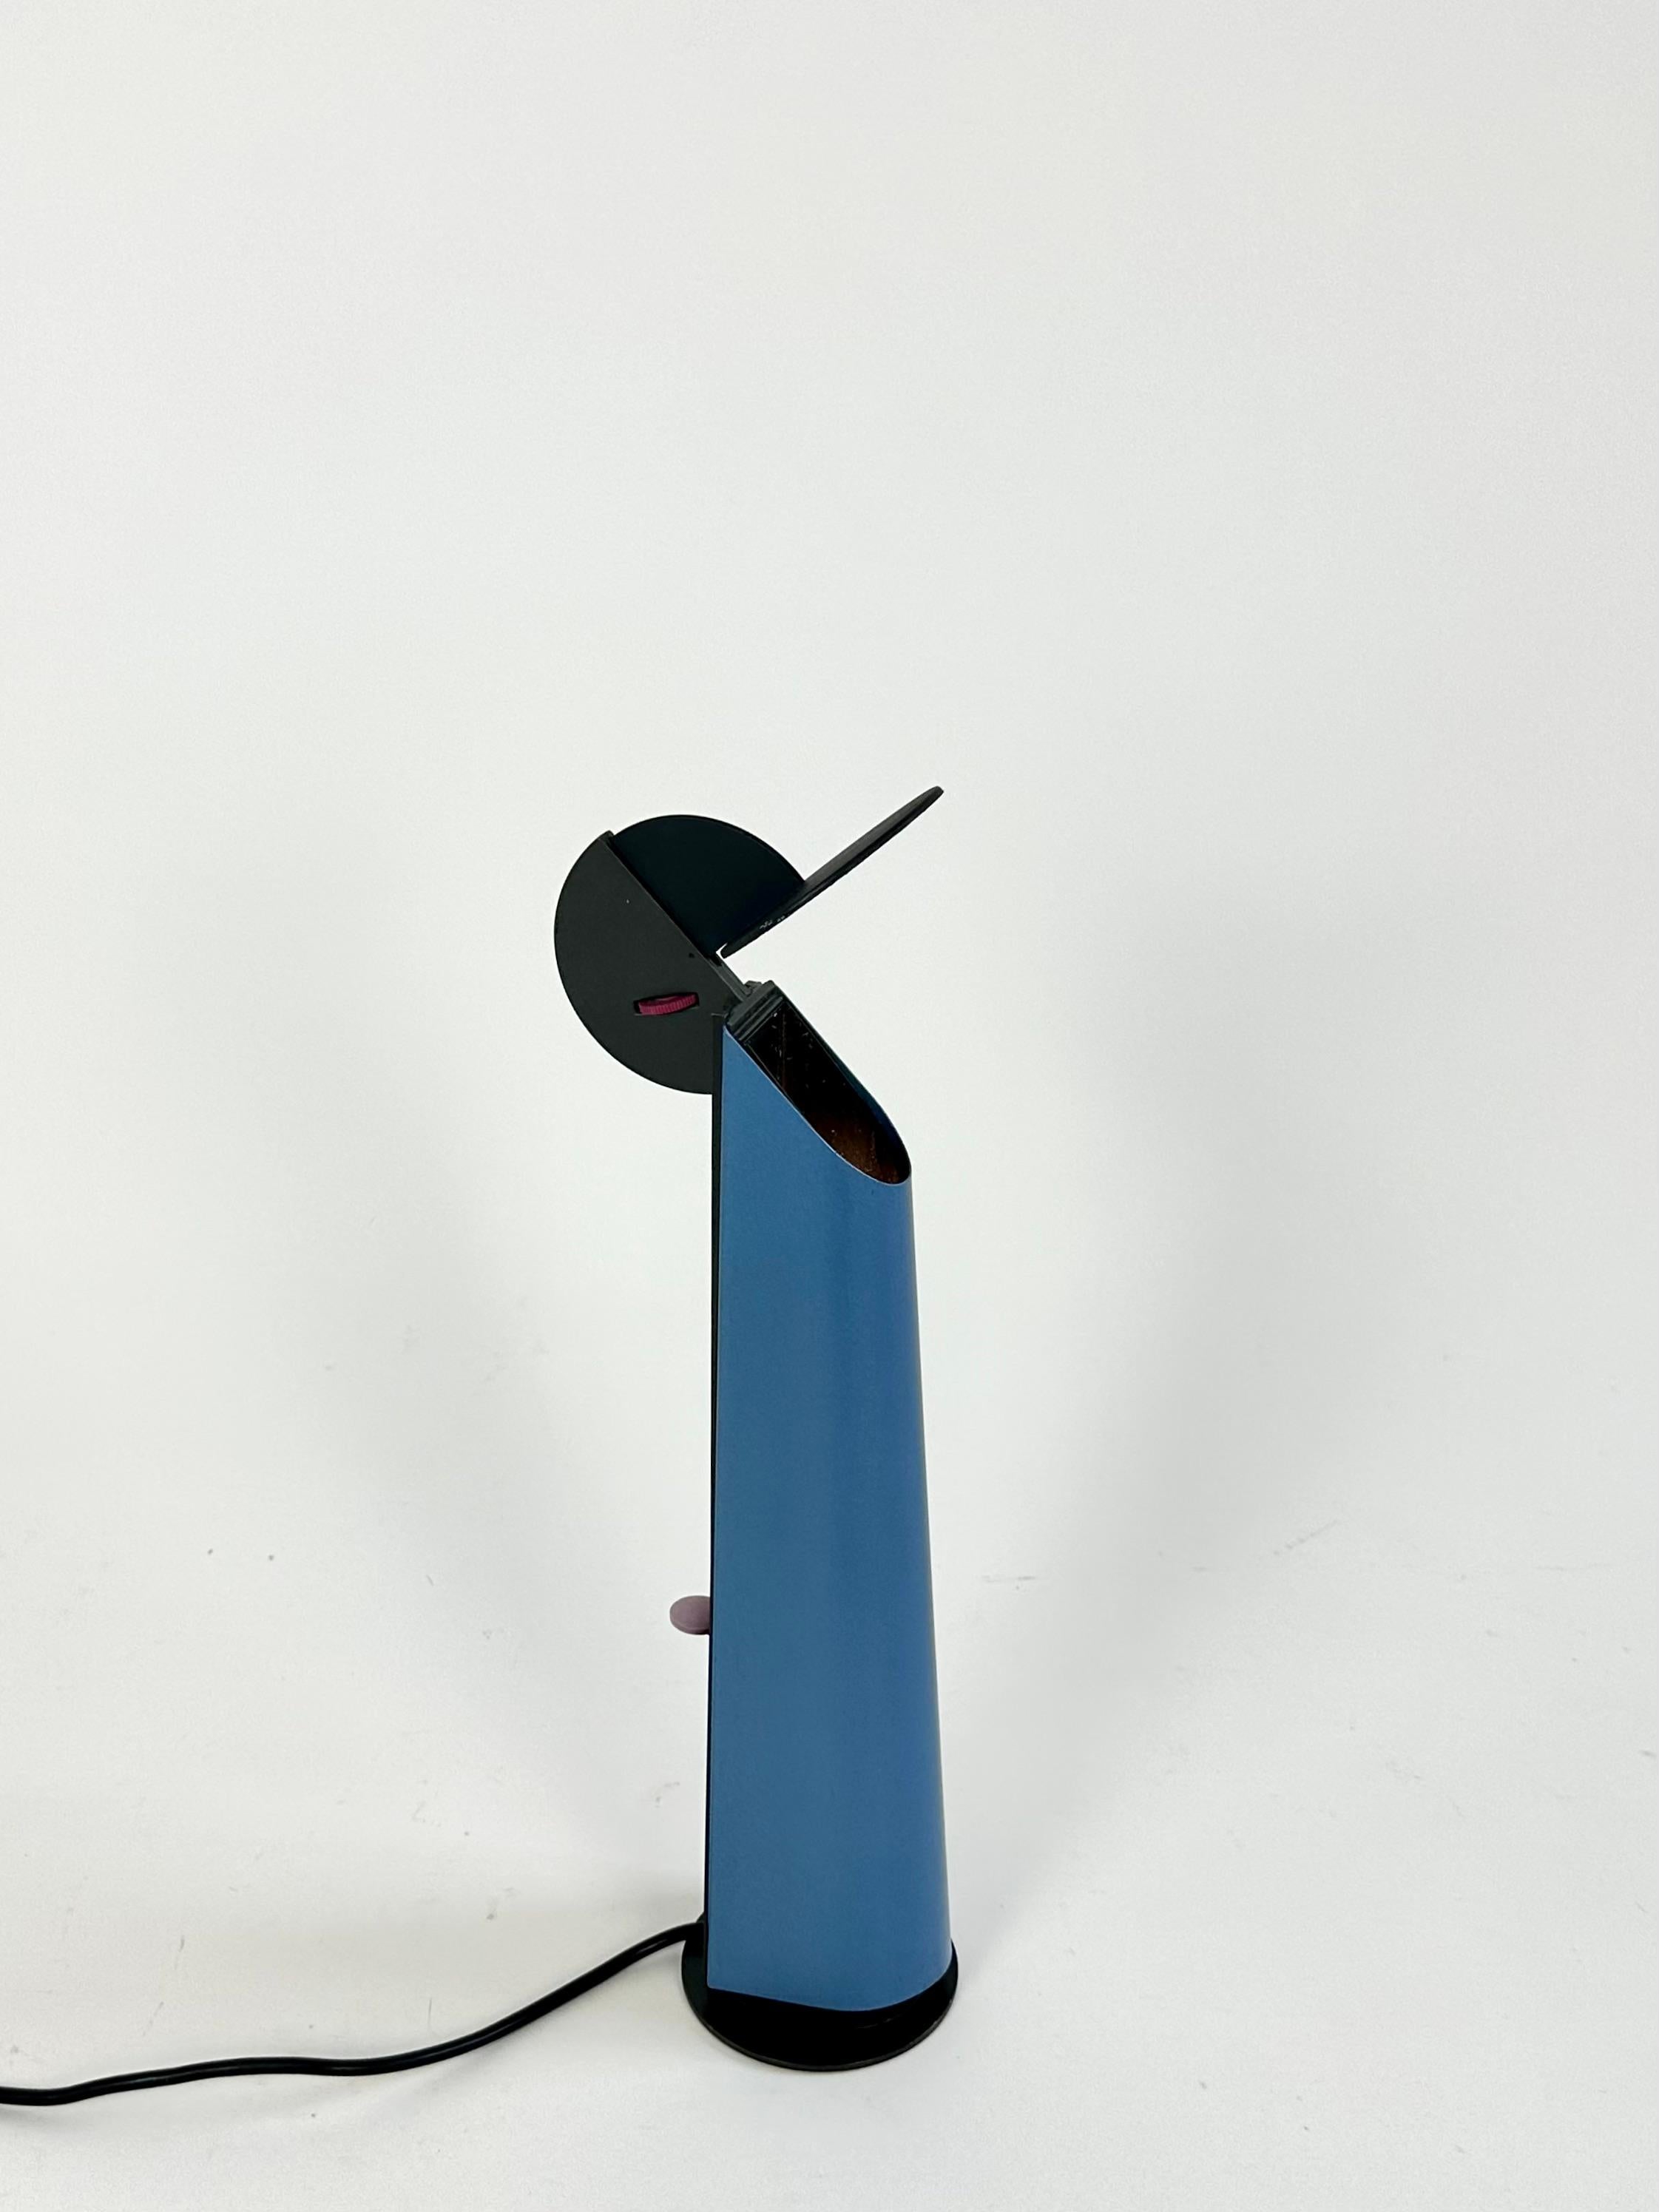 Lampe de table post-moderne Gibigiana conçue en 1980 par Achille Castiglioni pour Flos, Italie.

Un miroir mobile réfléchit la lumière à partir d'une source cachée dans la lampe. L'intensité lumineuse est réglée par un variateur situé à l'arrière de